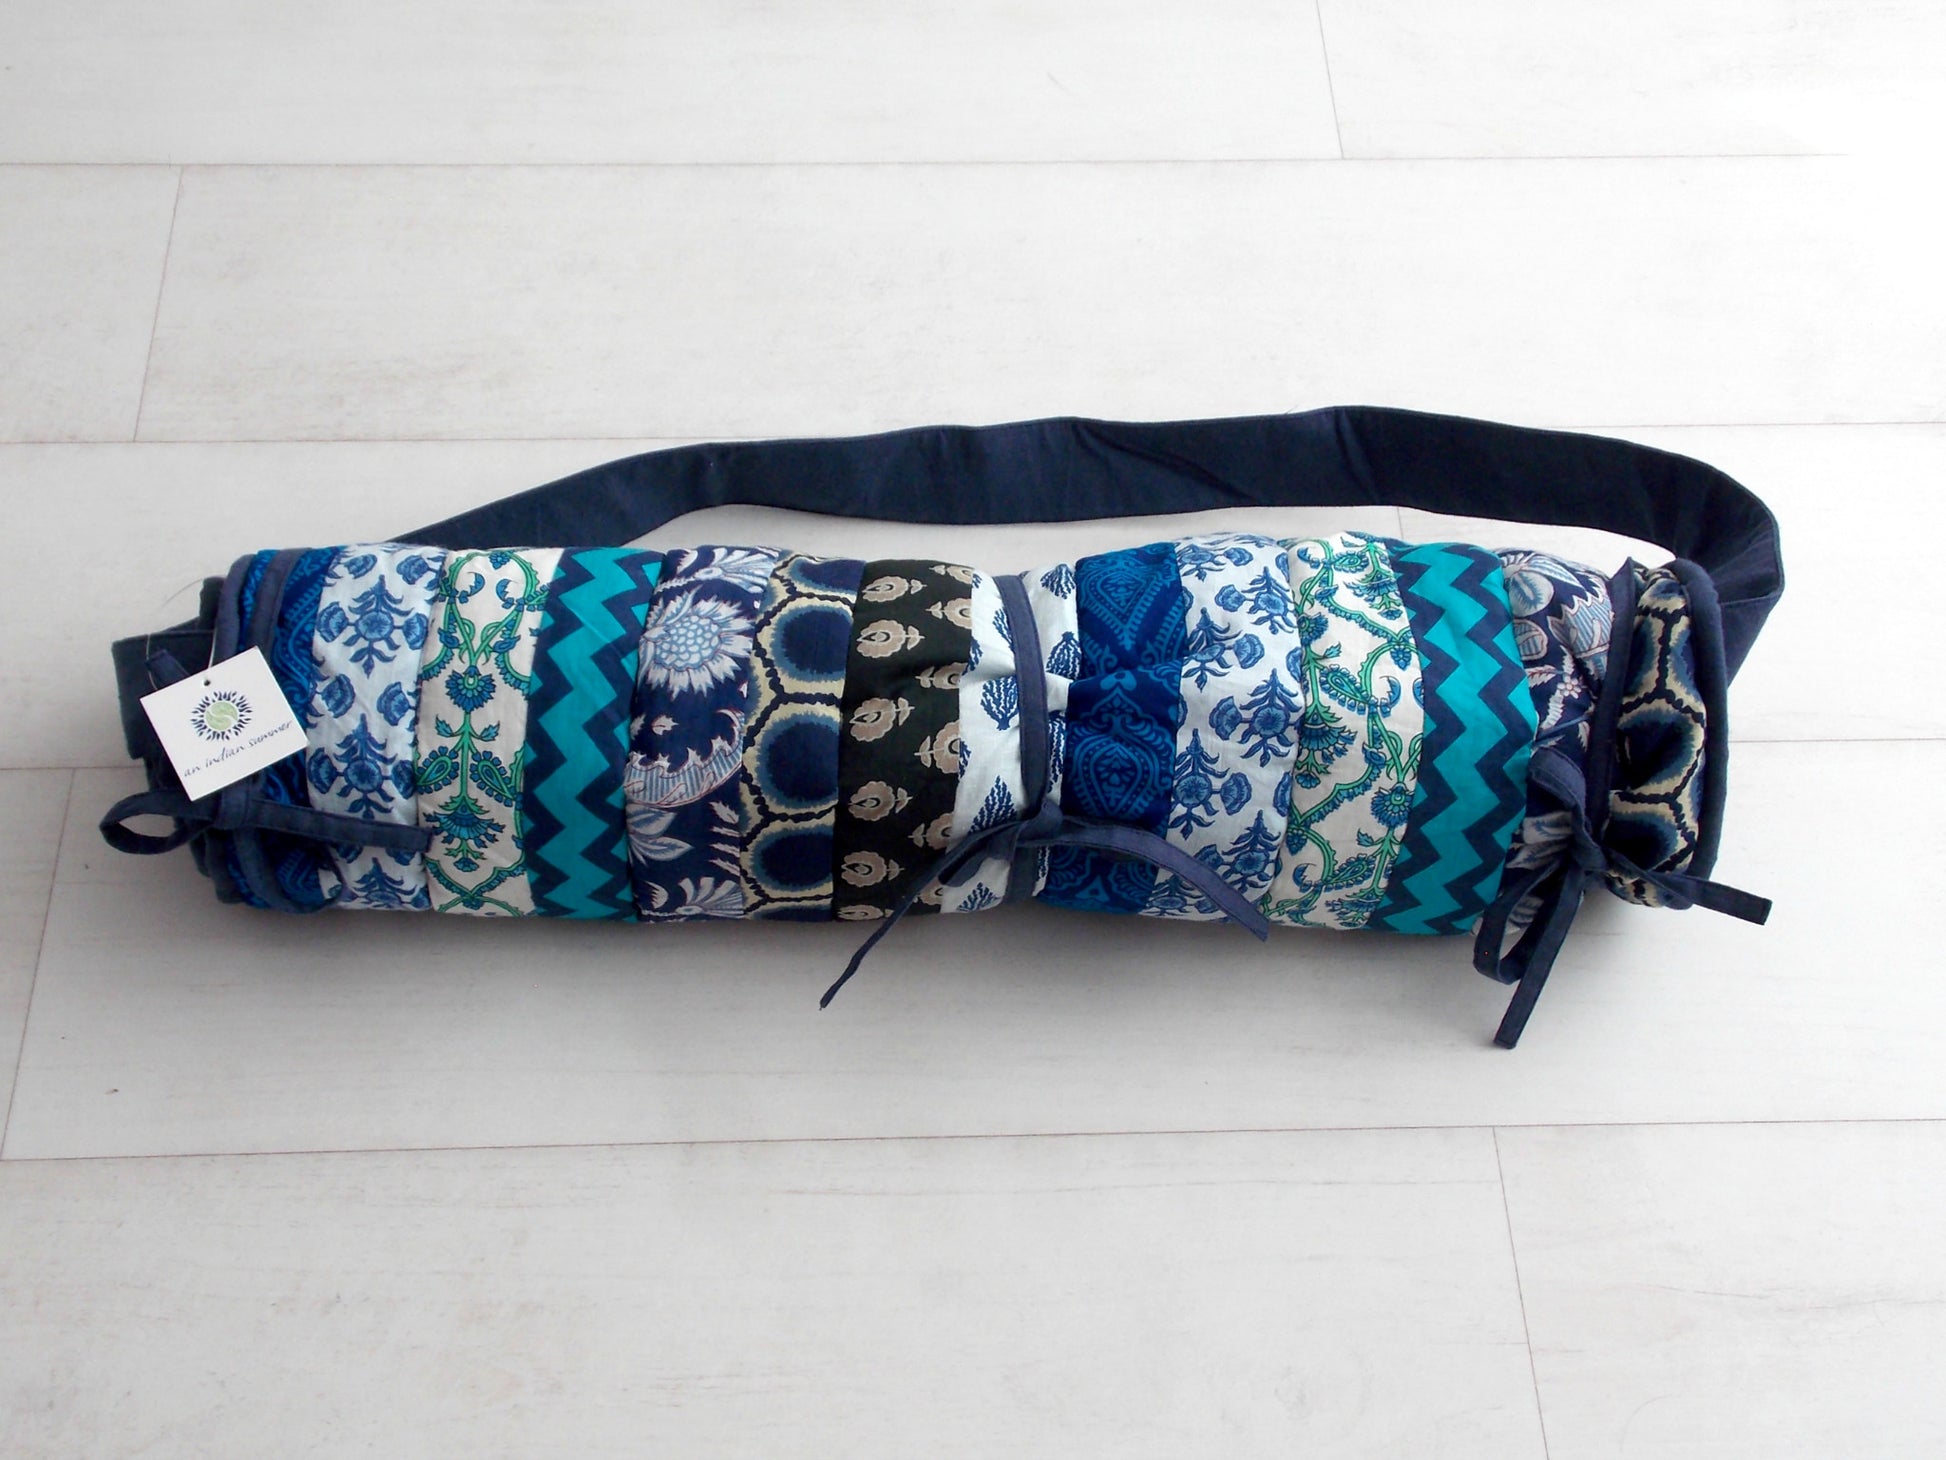 Teal Medley Yoga Mat - Patchwork Stripes - An Indian Summer